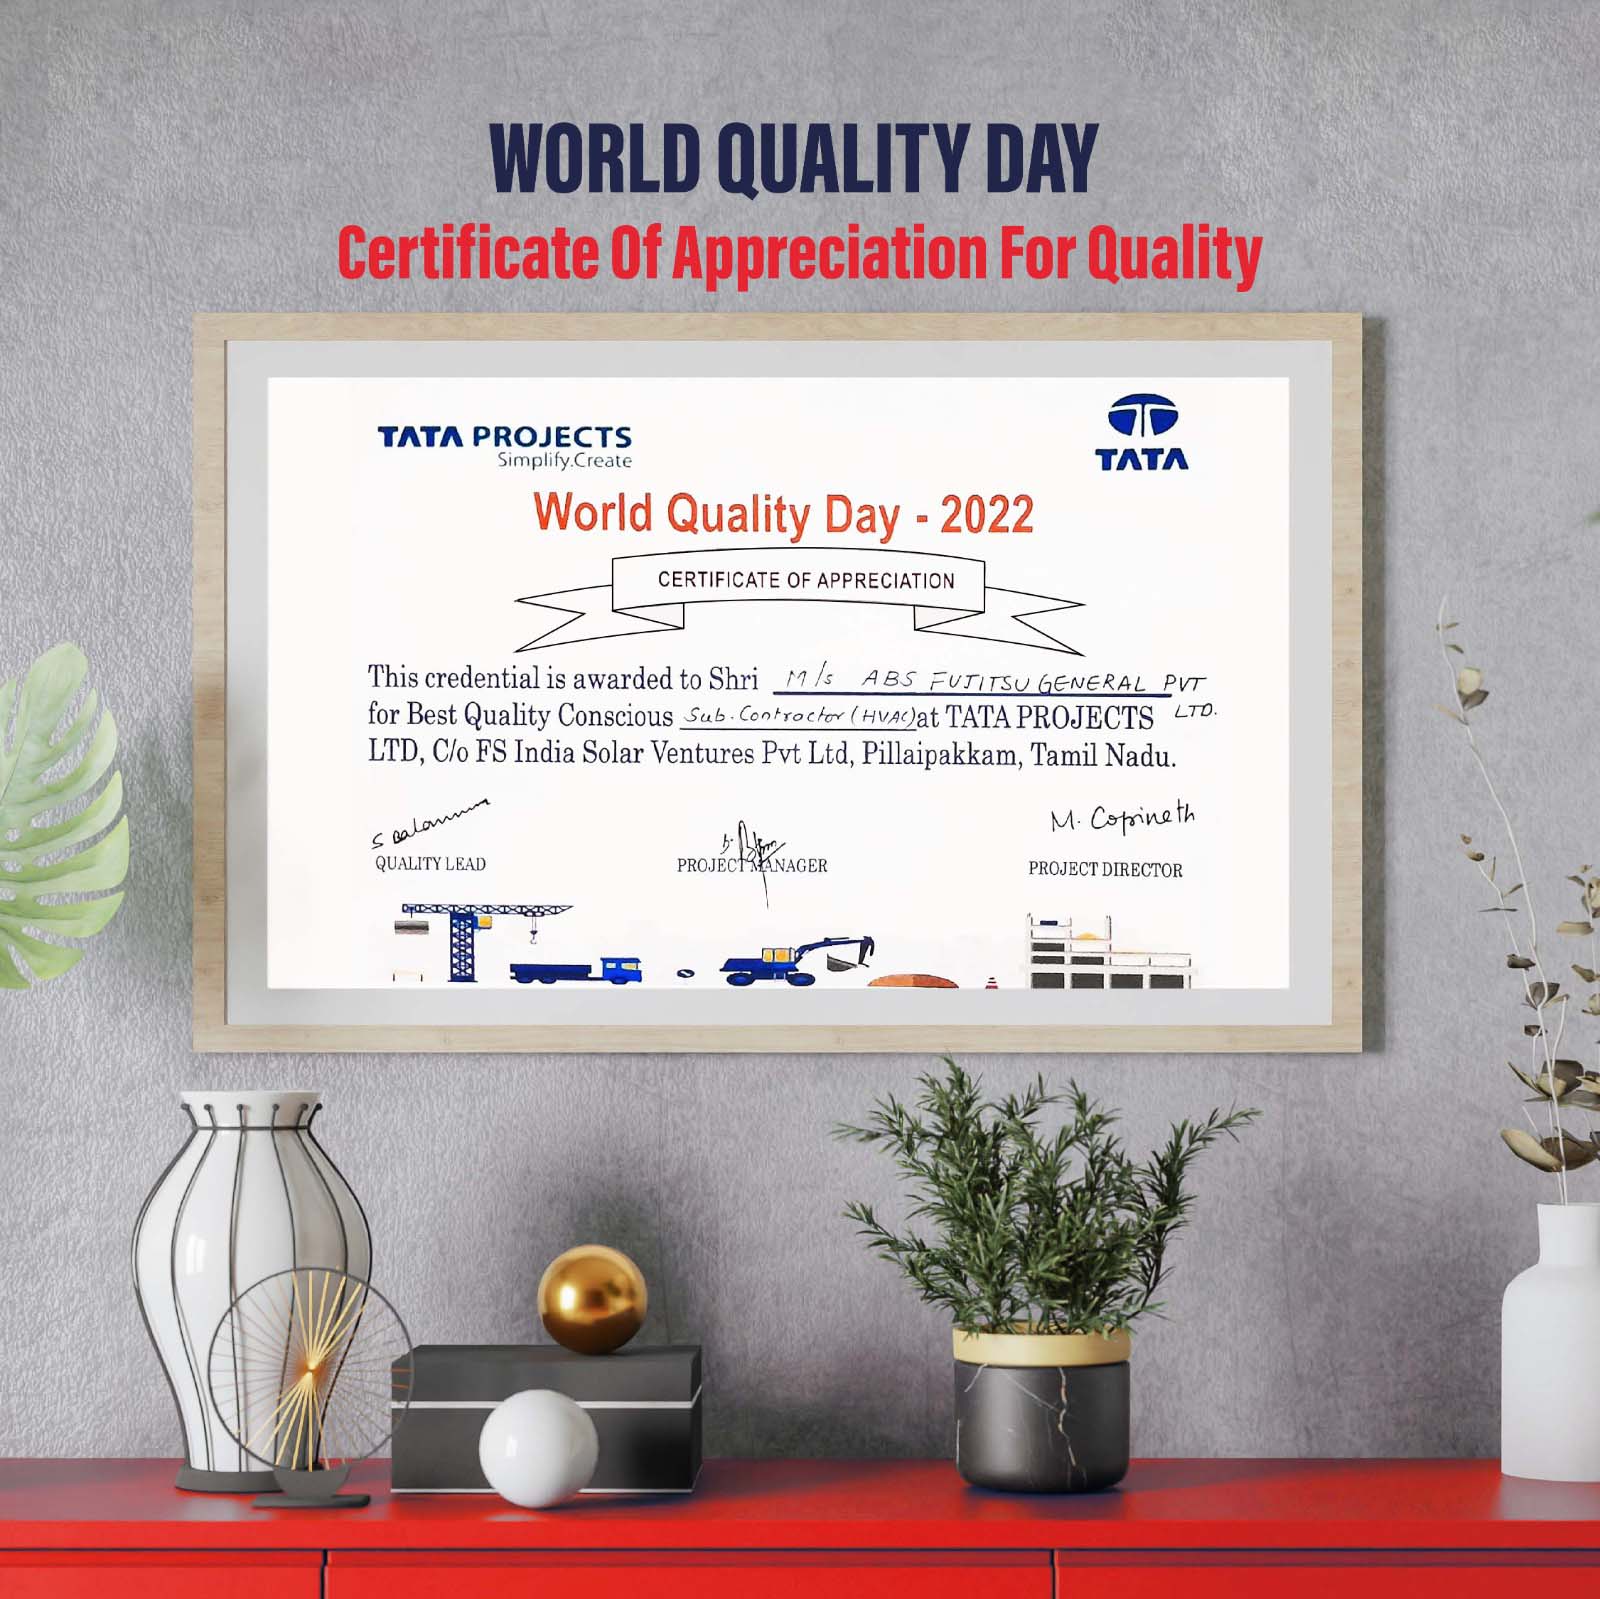 World Quality Day 2022-Award-TATA Projects - ABS Fujitsu General Pvt Ltd